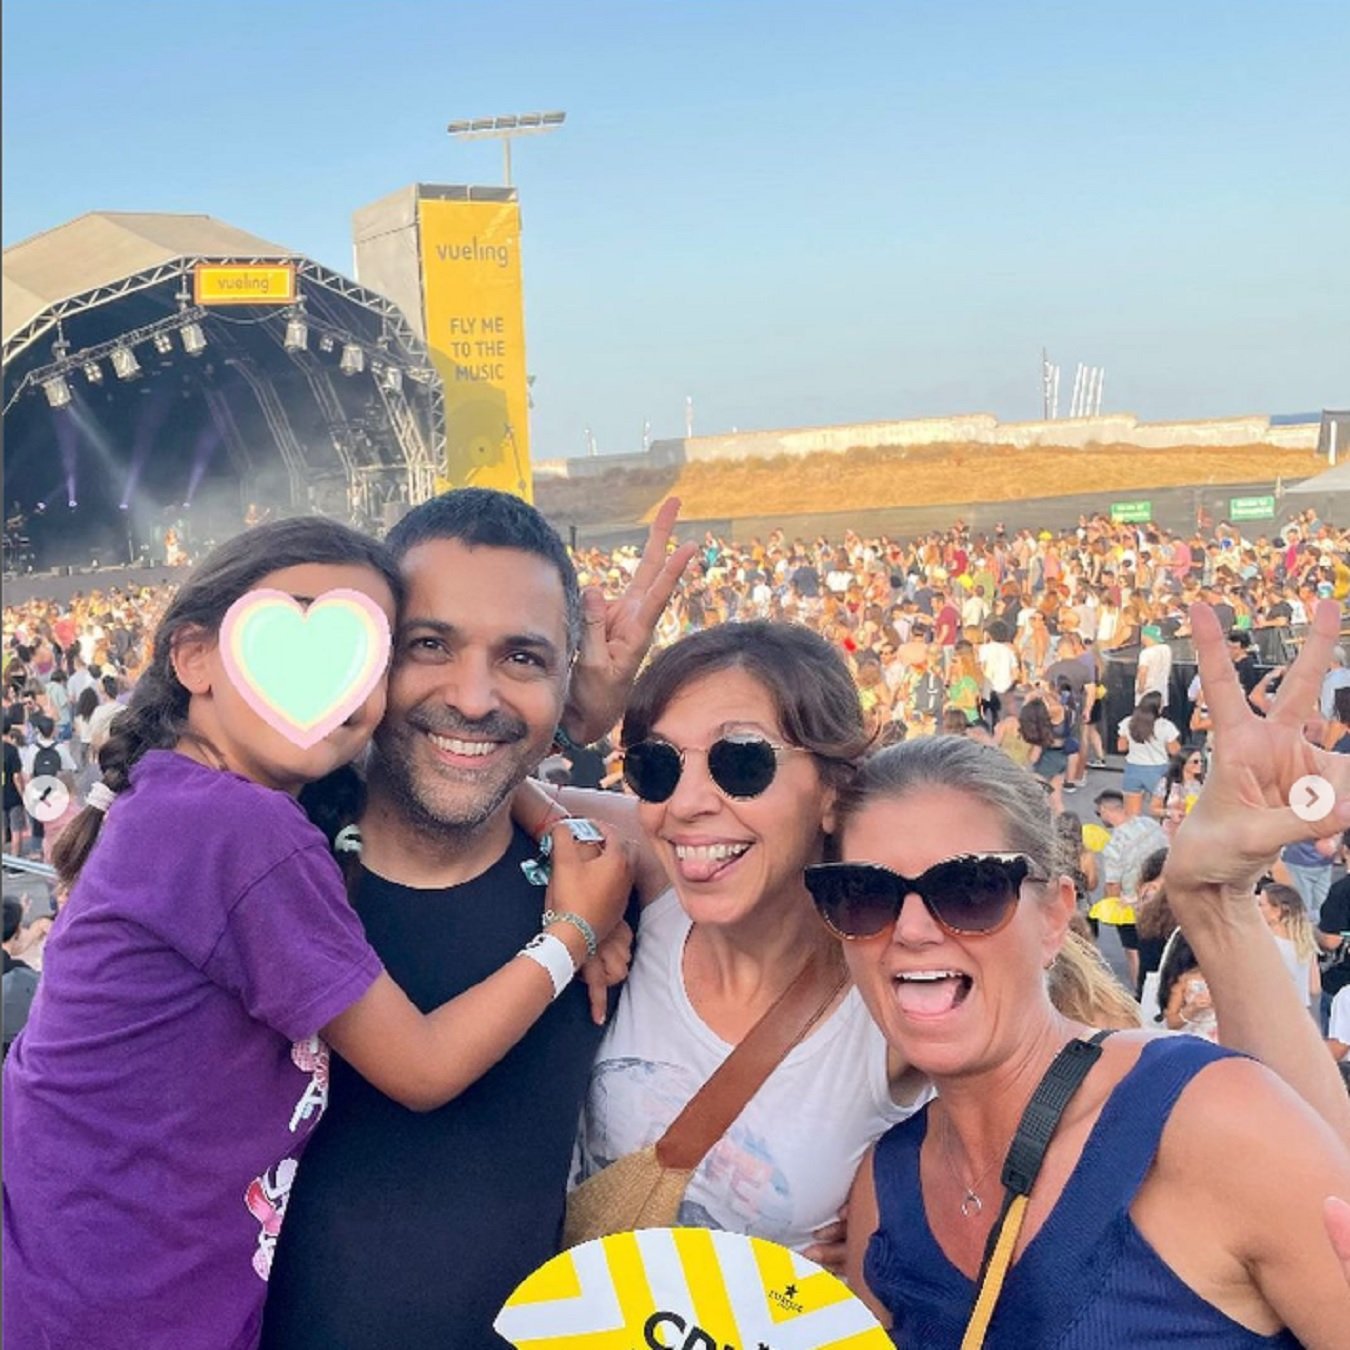 Cris Puig con el marido Jaume y la hija en brazos, Instagram